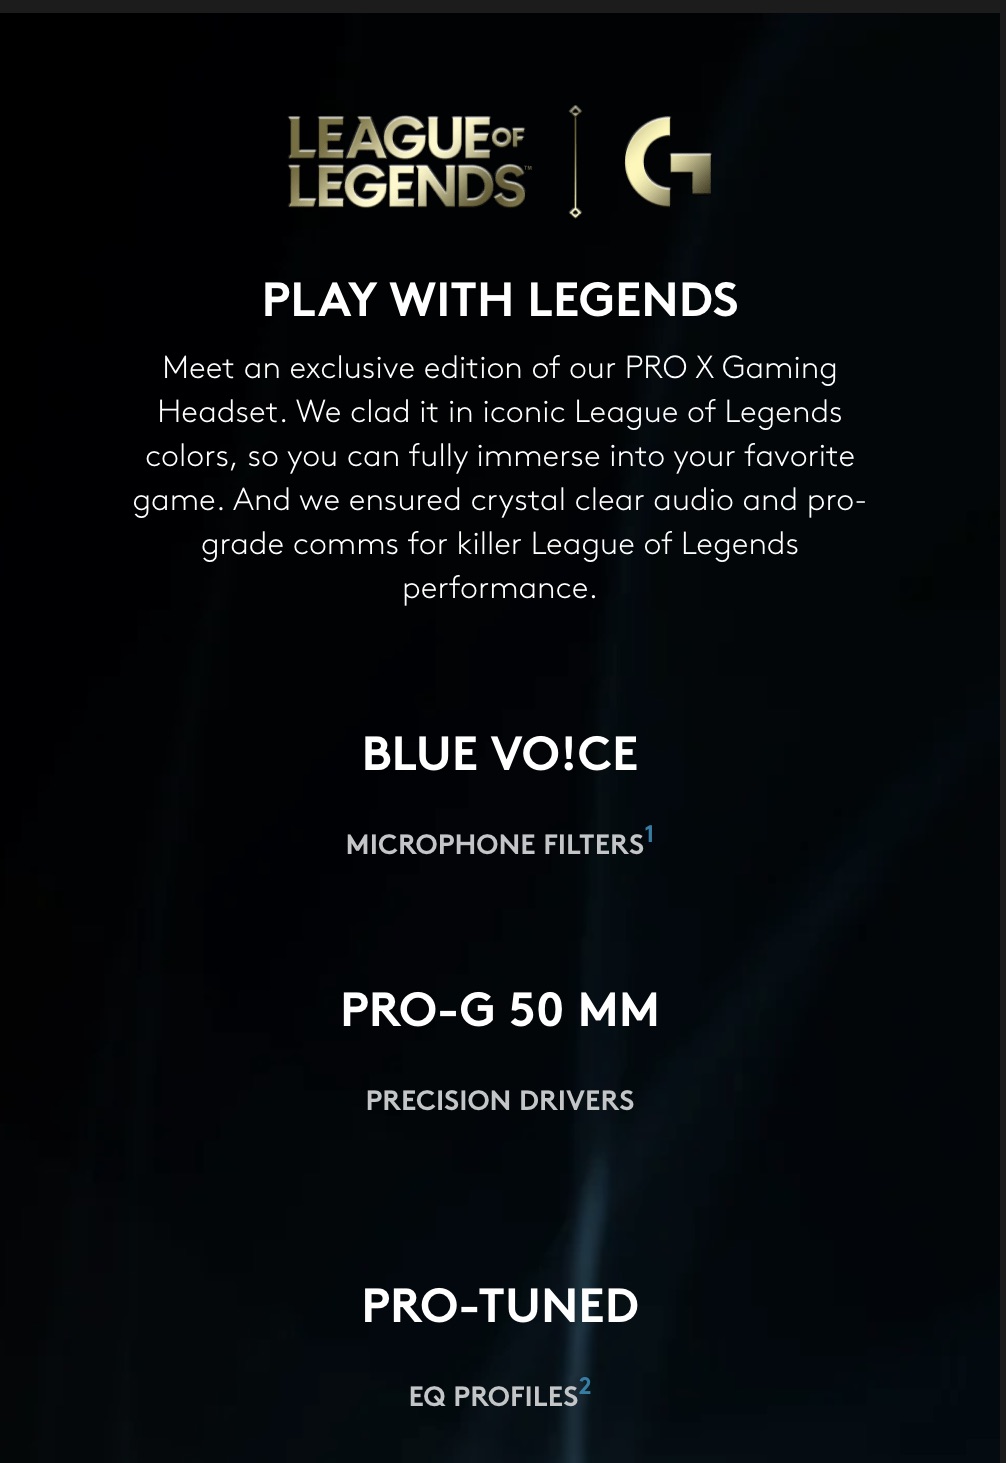 Logitech-G-Pro-X-Gaming-Headset-League-Of-Legends-Edition-Description-1